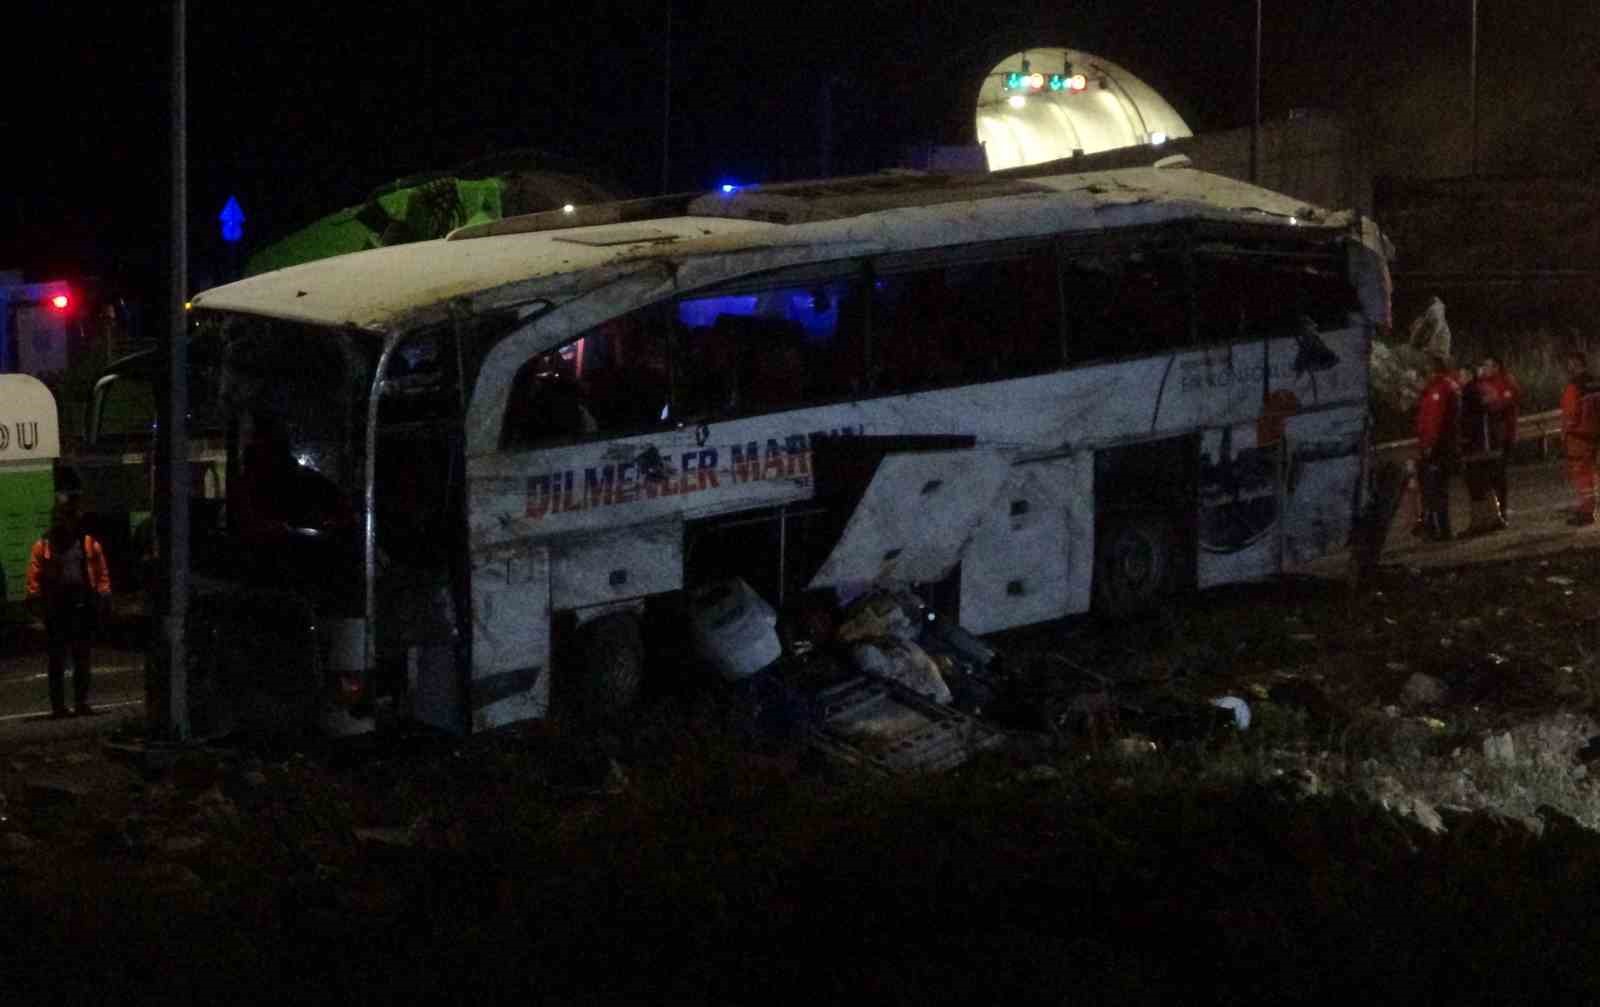 Mersin’deki otobüs kazasında hayatını kaybeden 6 kişinin kimlikleri tespit edildi